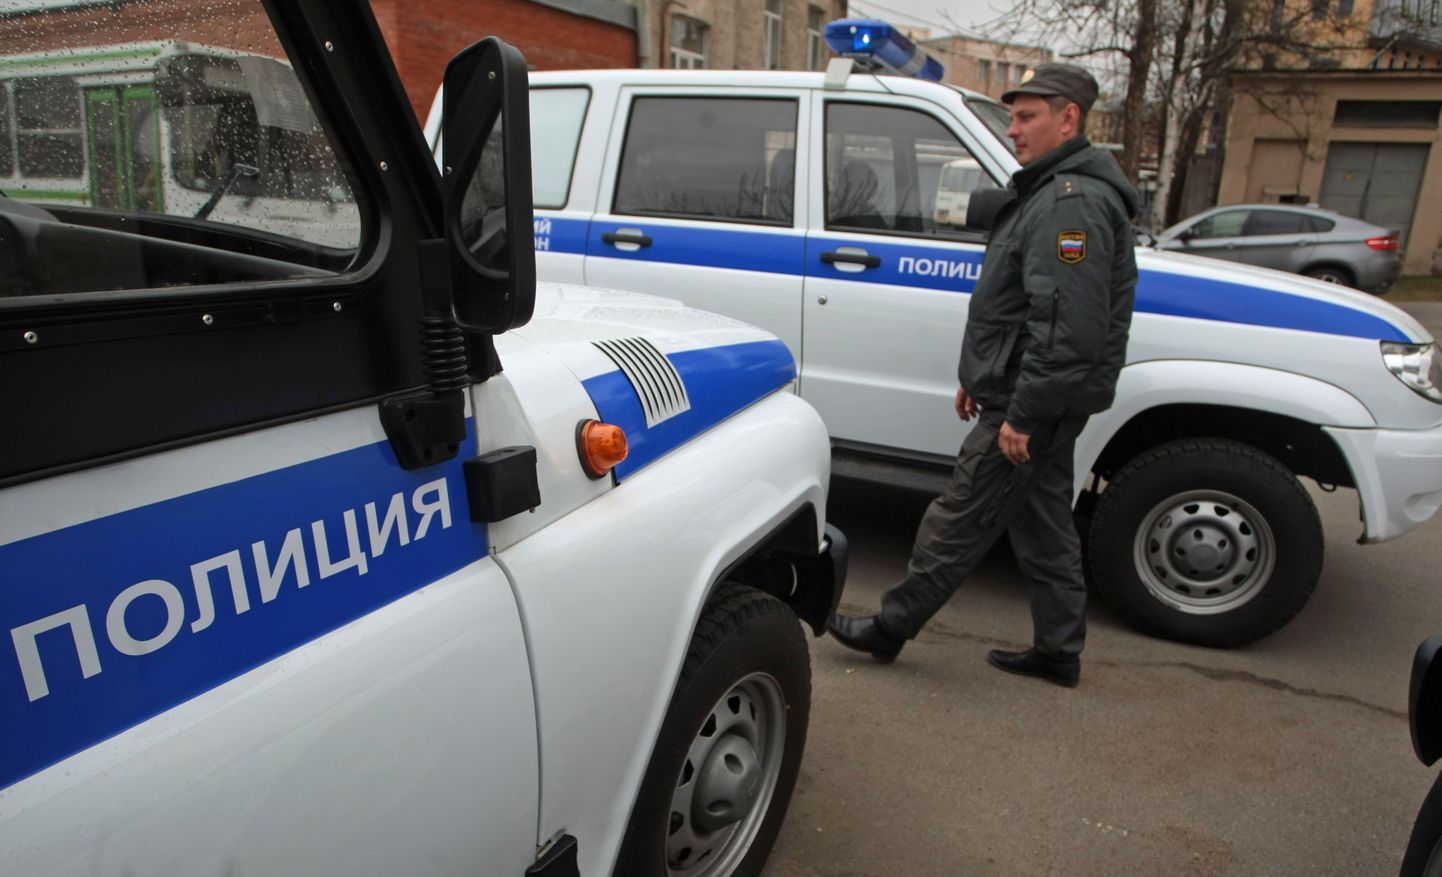 Полицейские машины в России